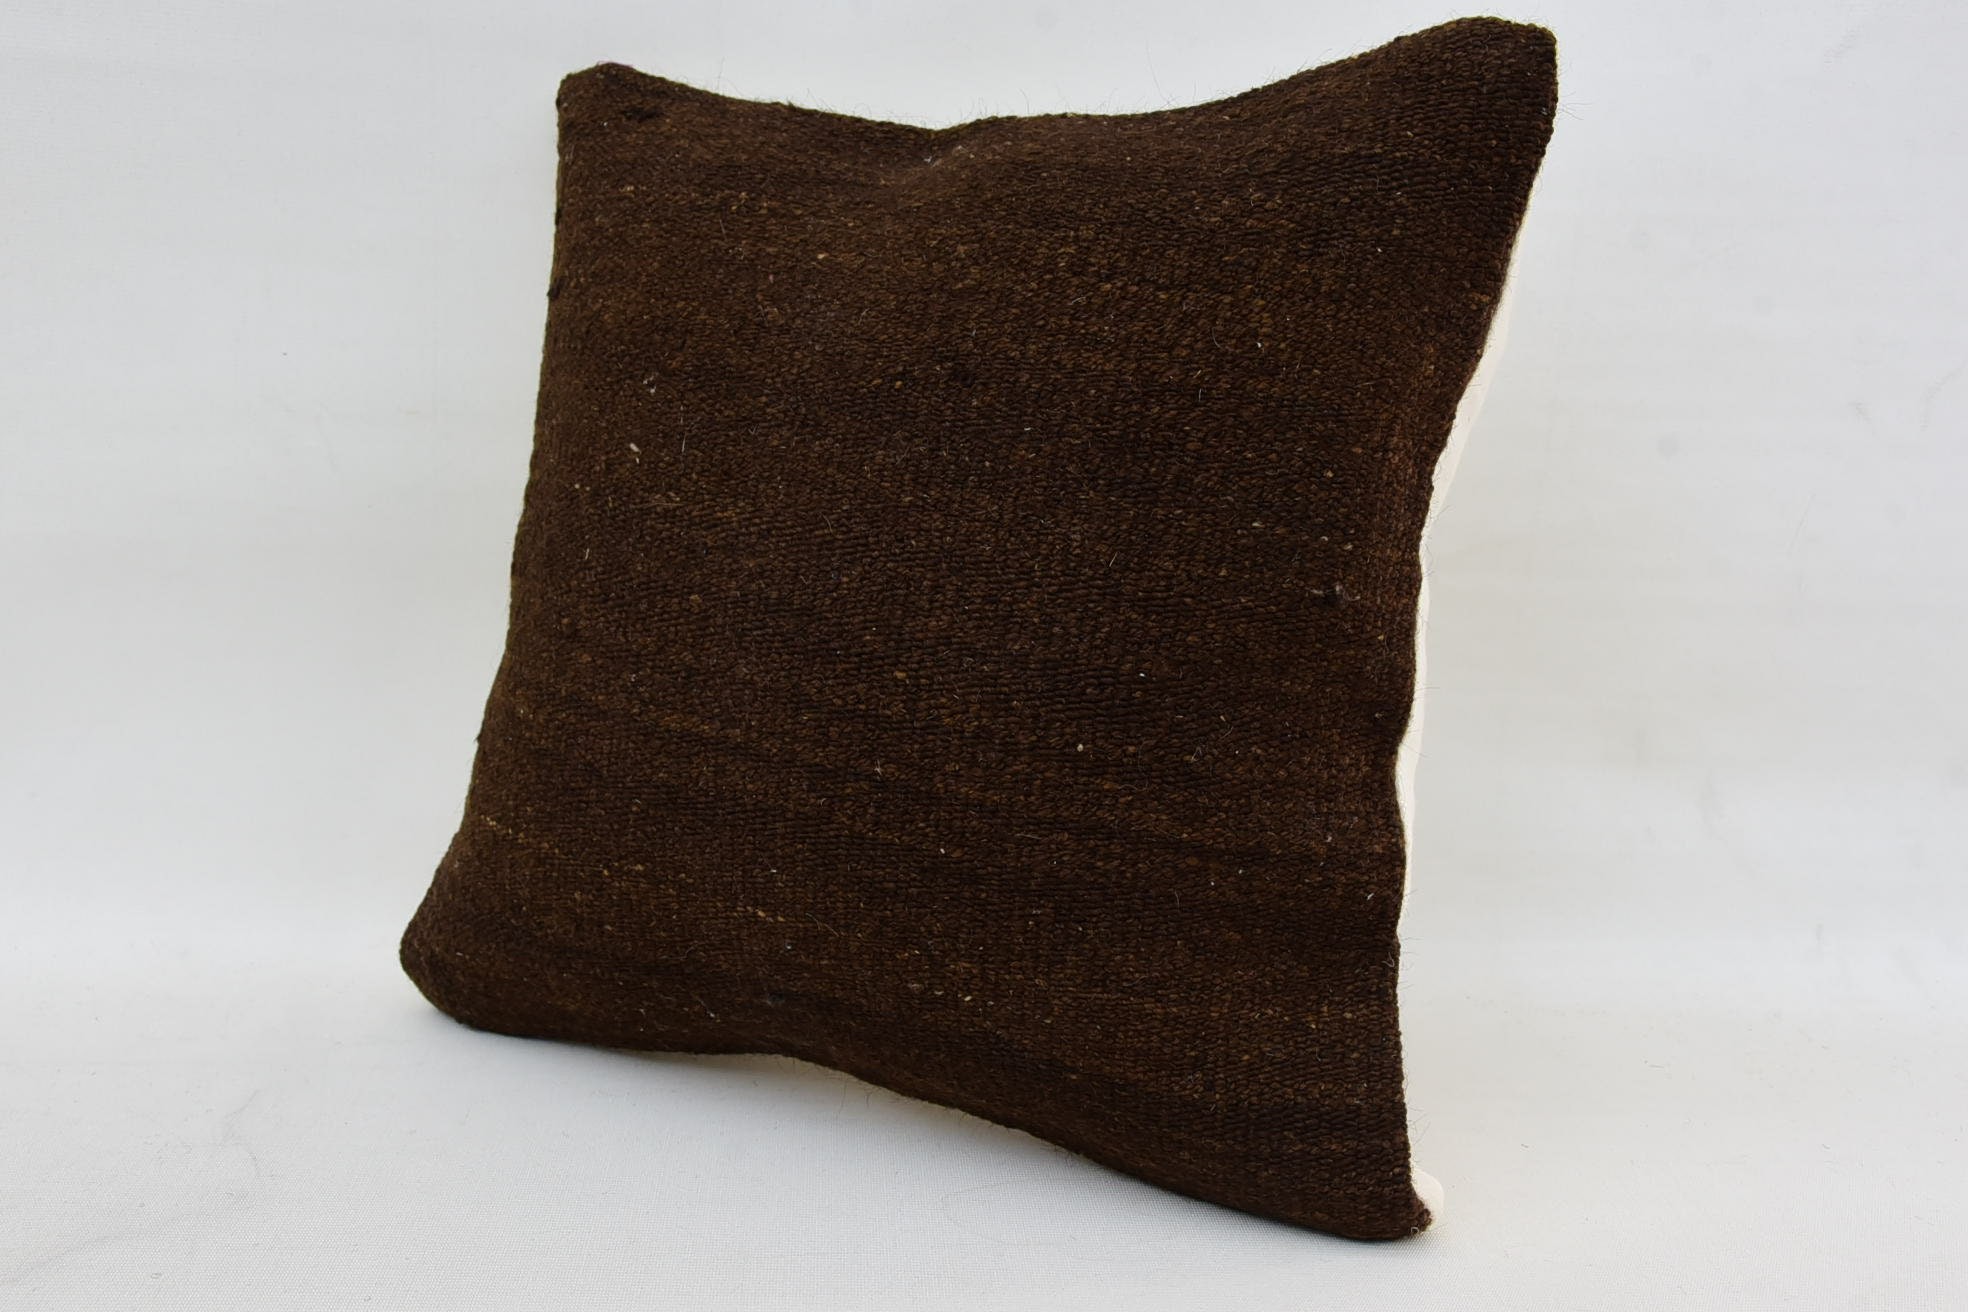 Antique Pillows, Home Decor Pillow, Southwestern Pillow Case, 14"x14" Brown Cushion Cover, Interior Designer Pillow